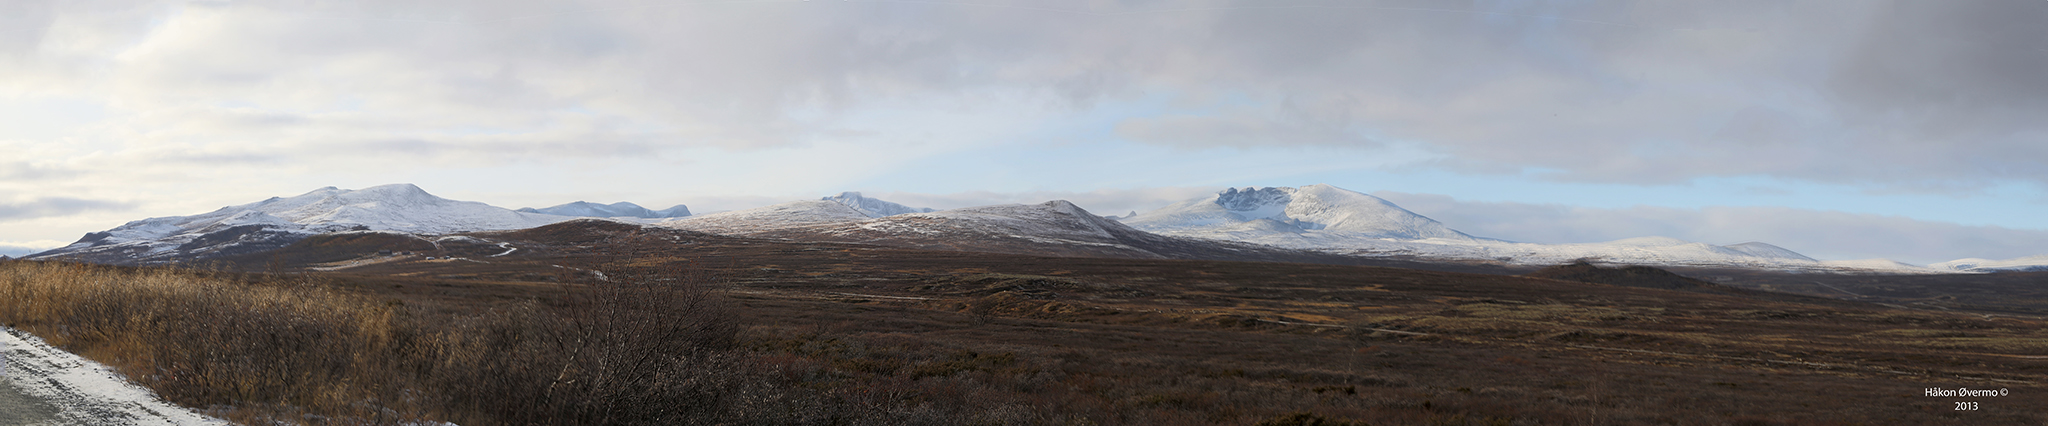   Panorama fra Dovrefjell nasjonalpark, vi ser Snøhetta som det høyeste fjellet 2286 moh.  